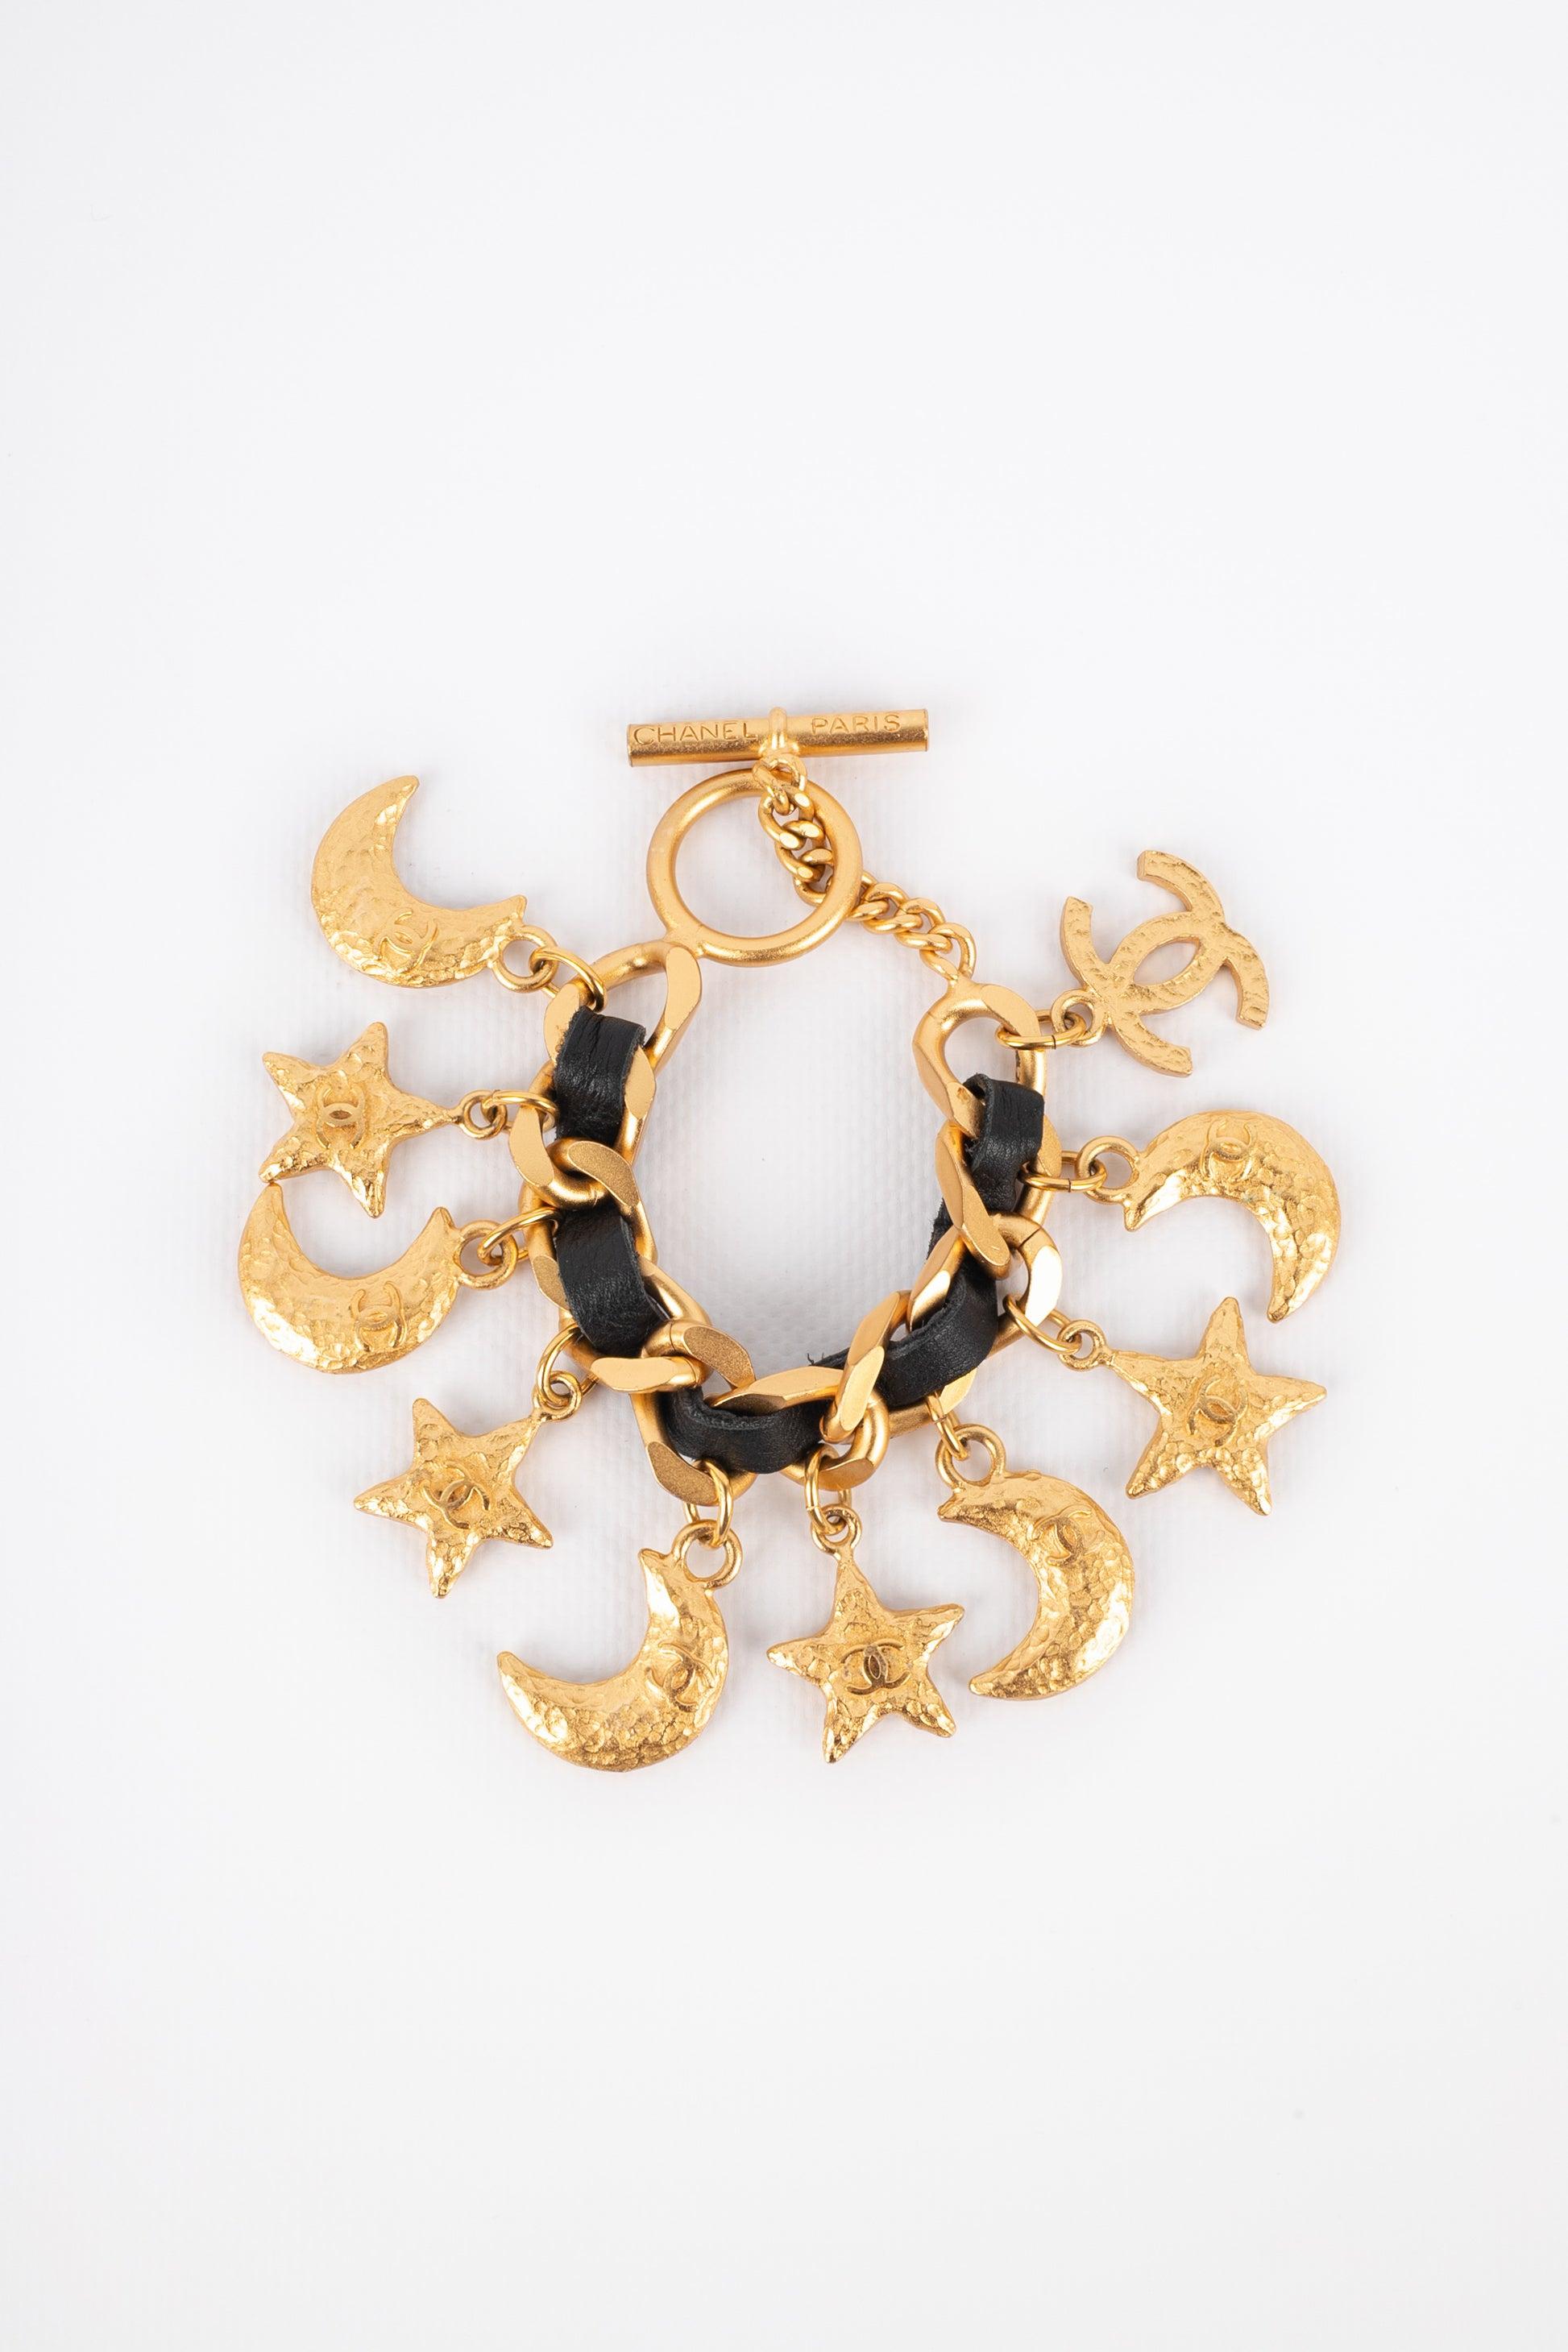 Chanel - (Fabriqué en France) Bracelet en métal doré avec du cuir noir et des charmes représentant des étoiles et des lunes centrés avec des logos cc. Bijoux gravés avec le S de Sales.
 
Informations complémentaires : 
Condit : Très bon